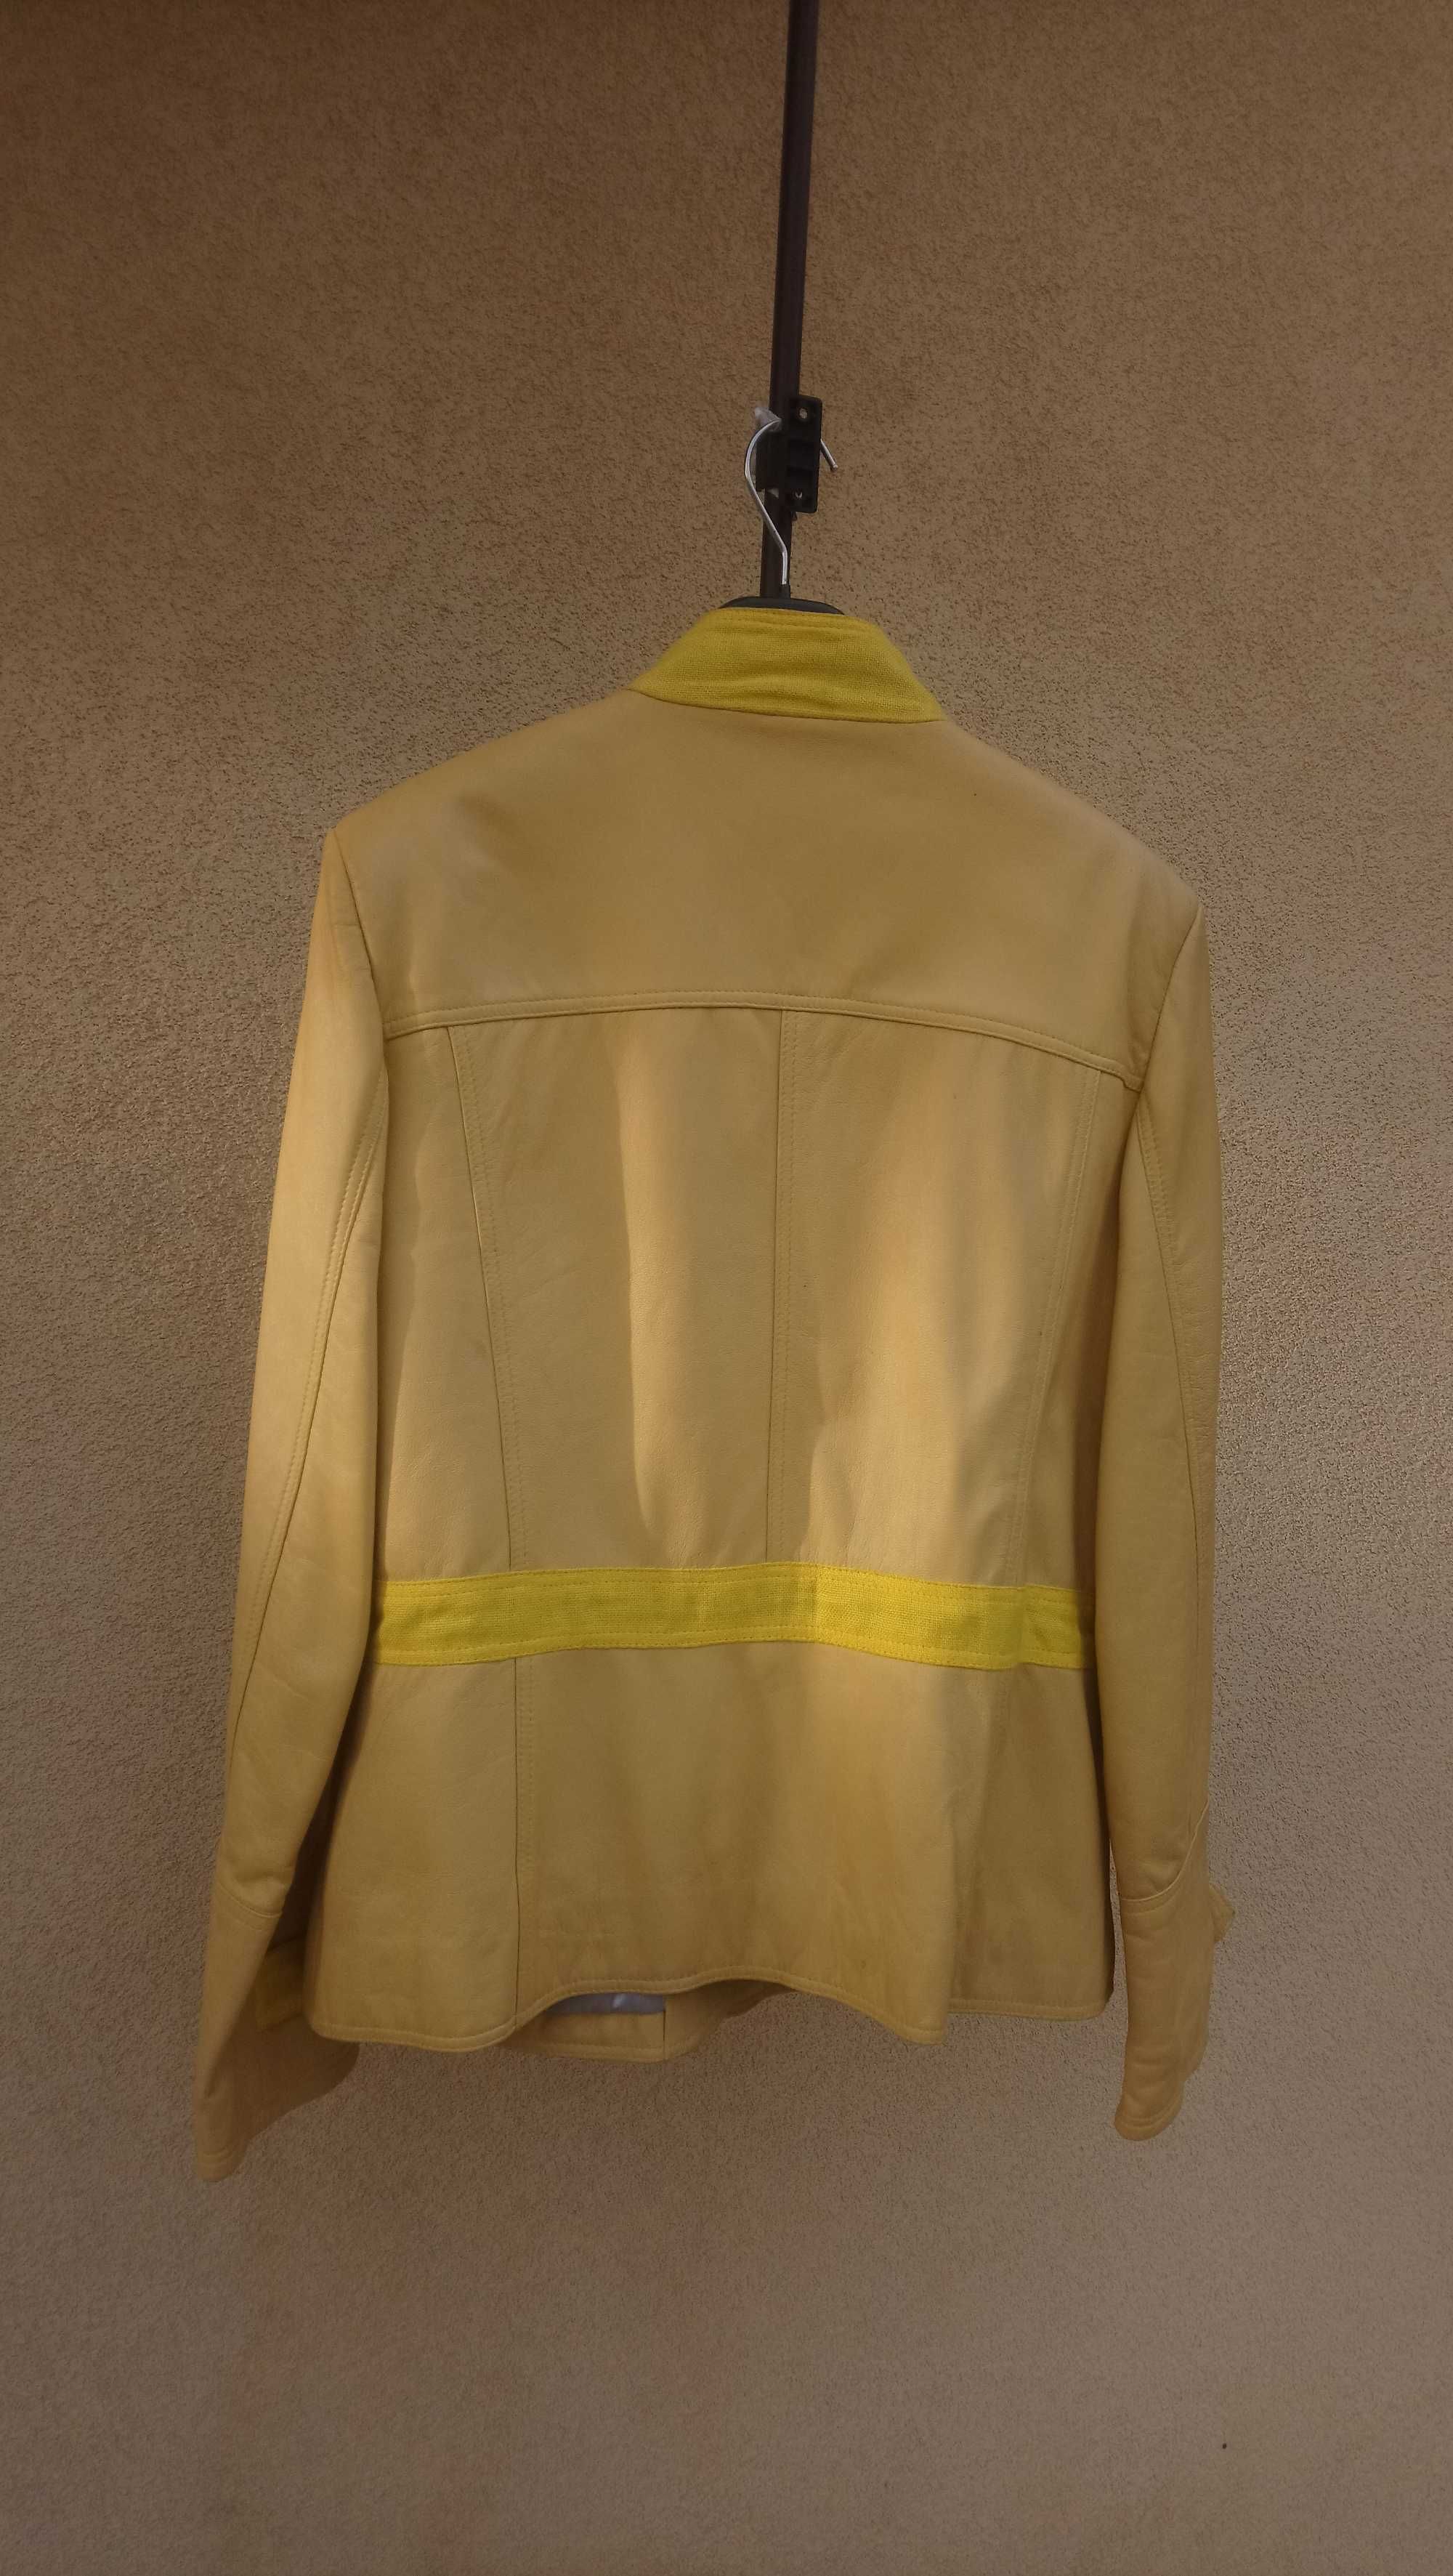 kurtkę z naturalnej skóry  żółta firmy Moonco Leather rozm. L-XL  nowa